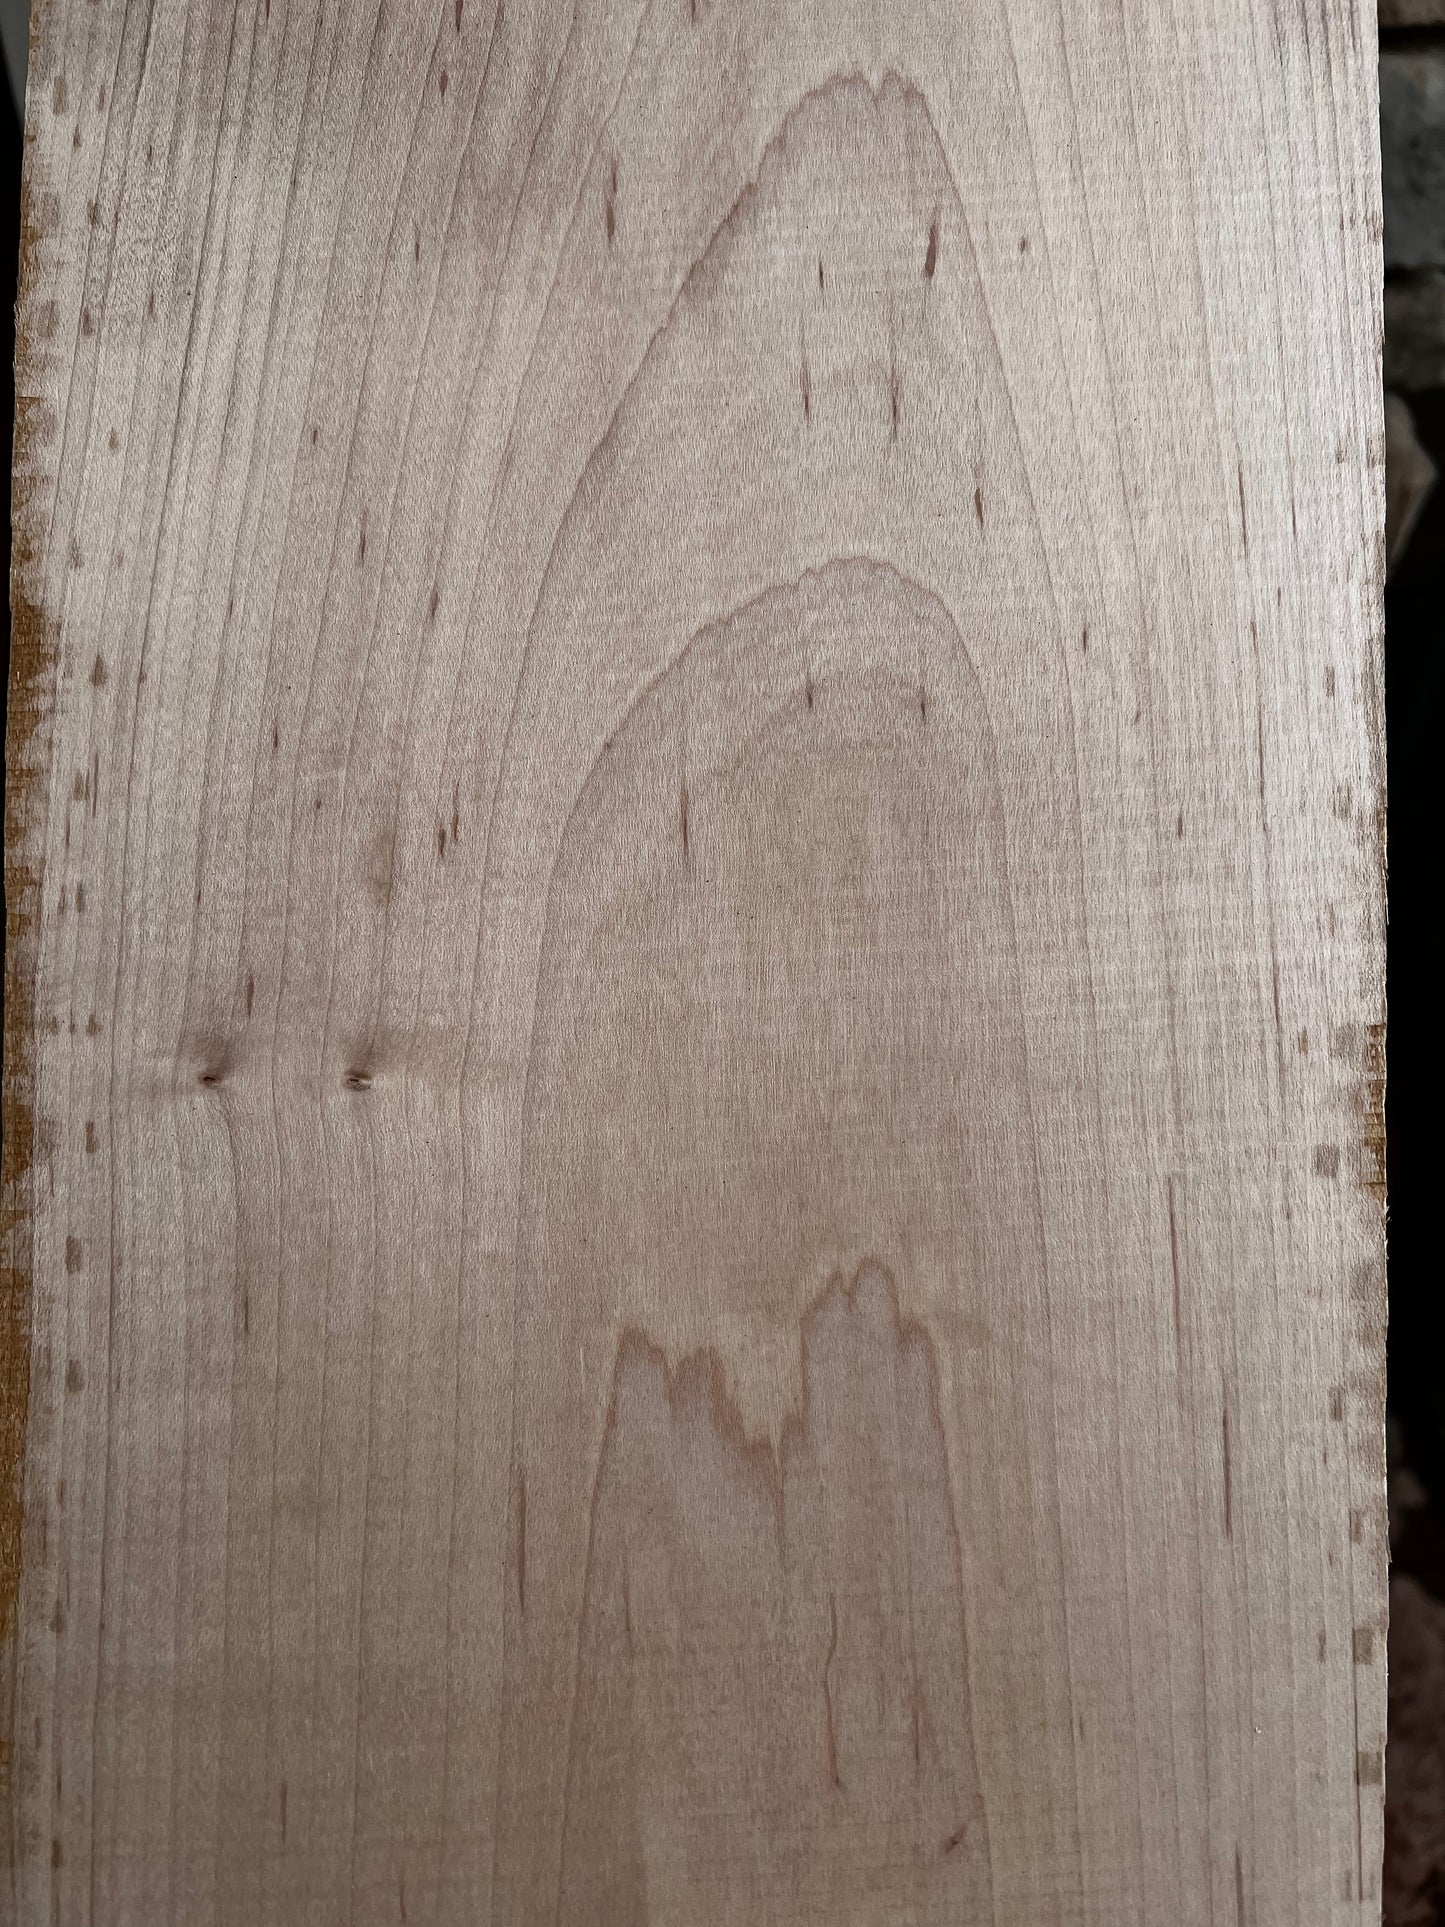 4/4 Hard Maple Hardwood Lumber Top Grade FAS